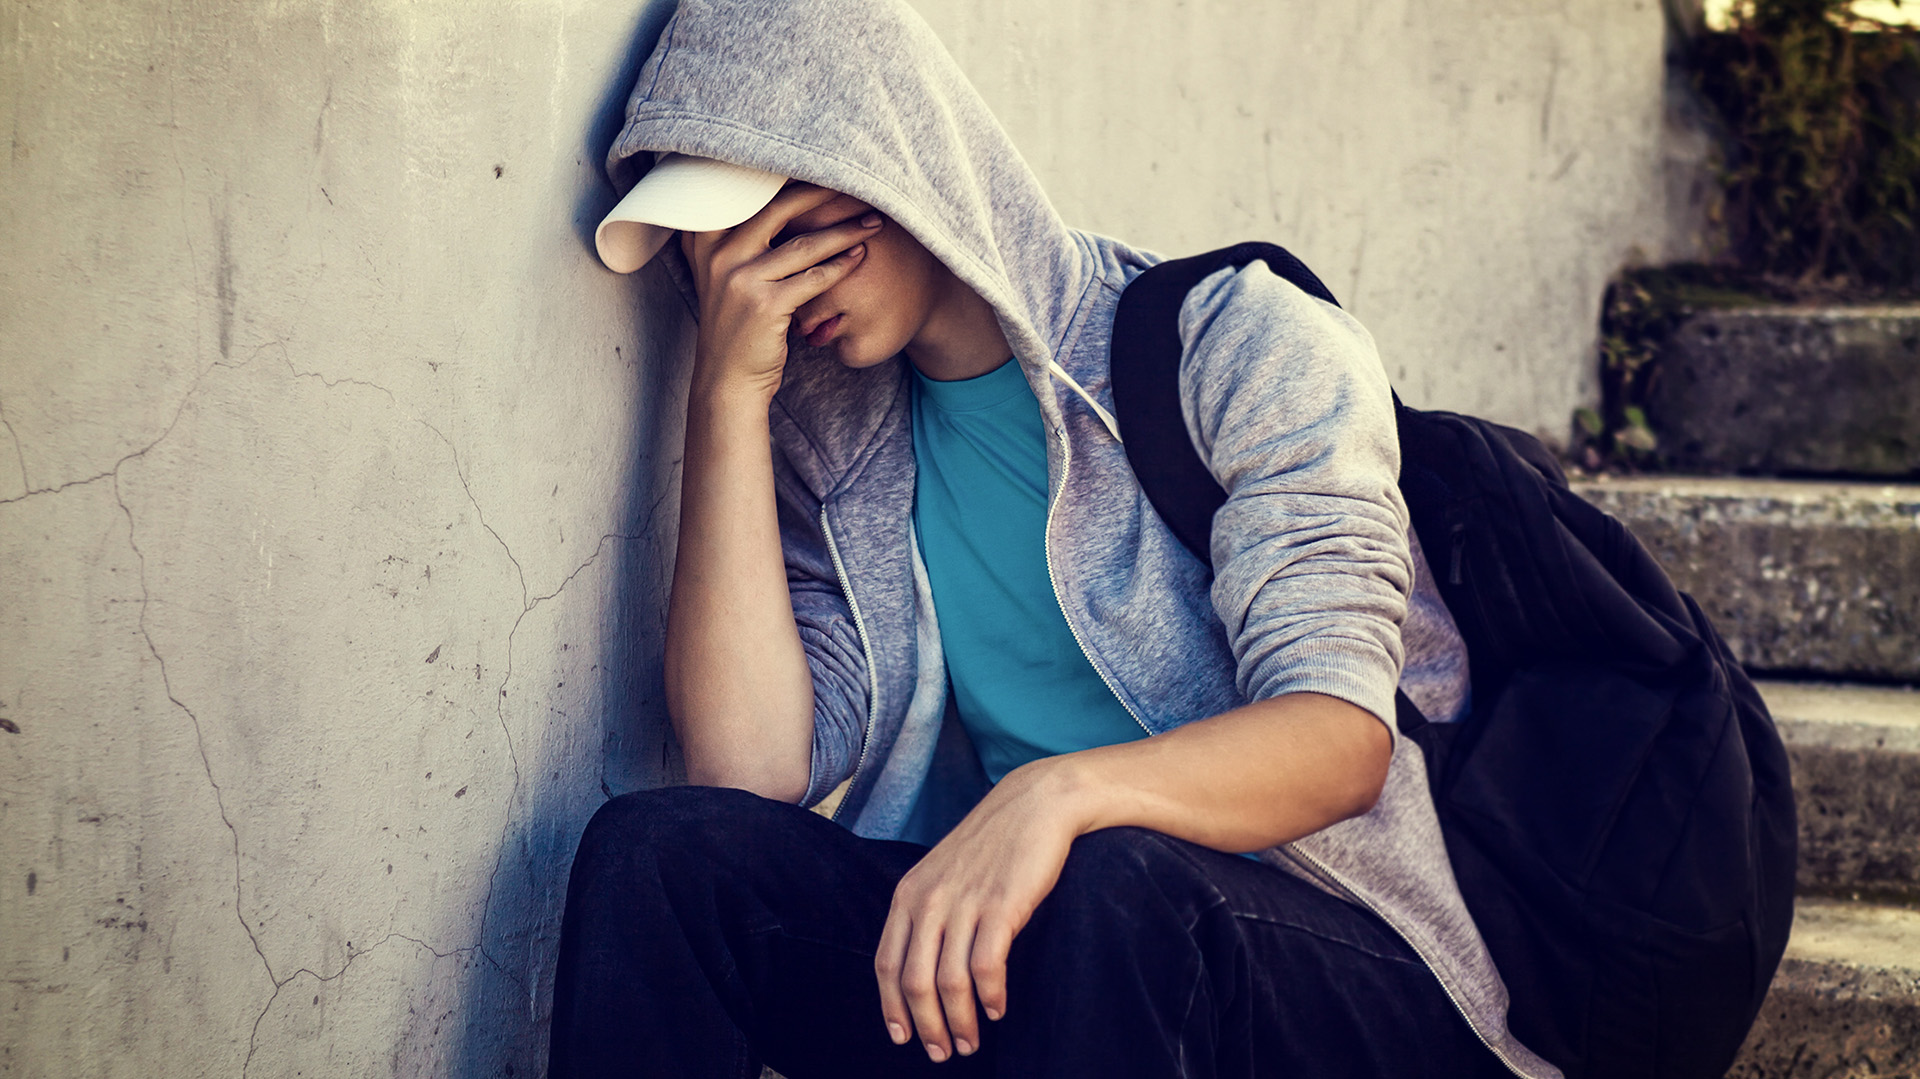 Gli adolescenti sono una popolazione incline ad avere problemi depressivi